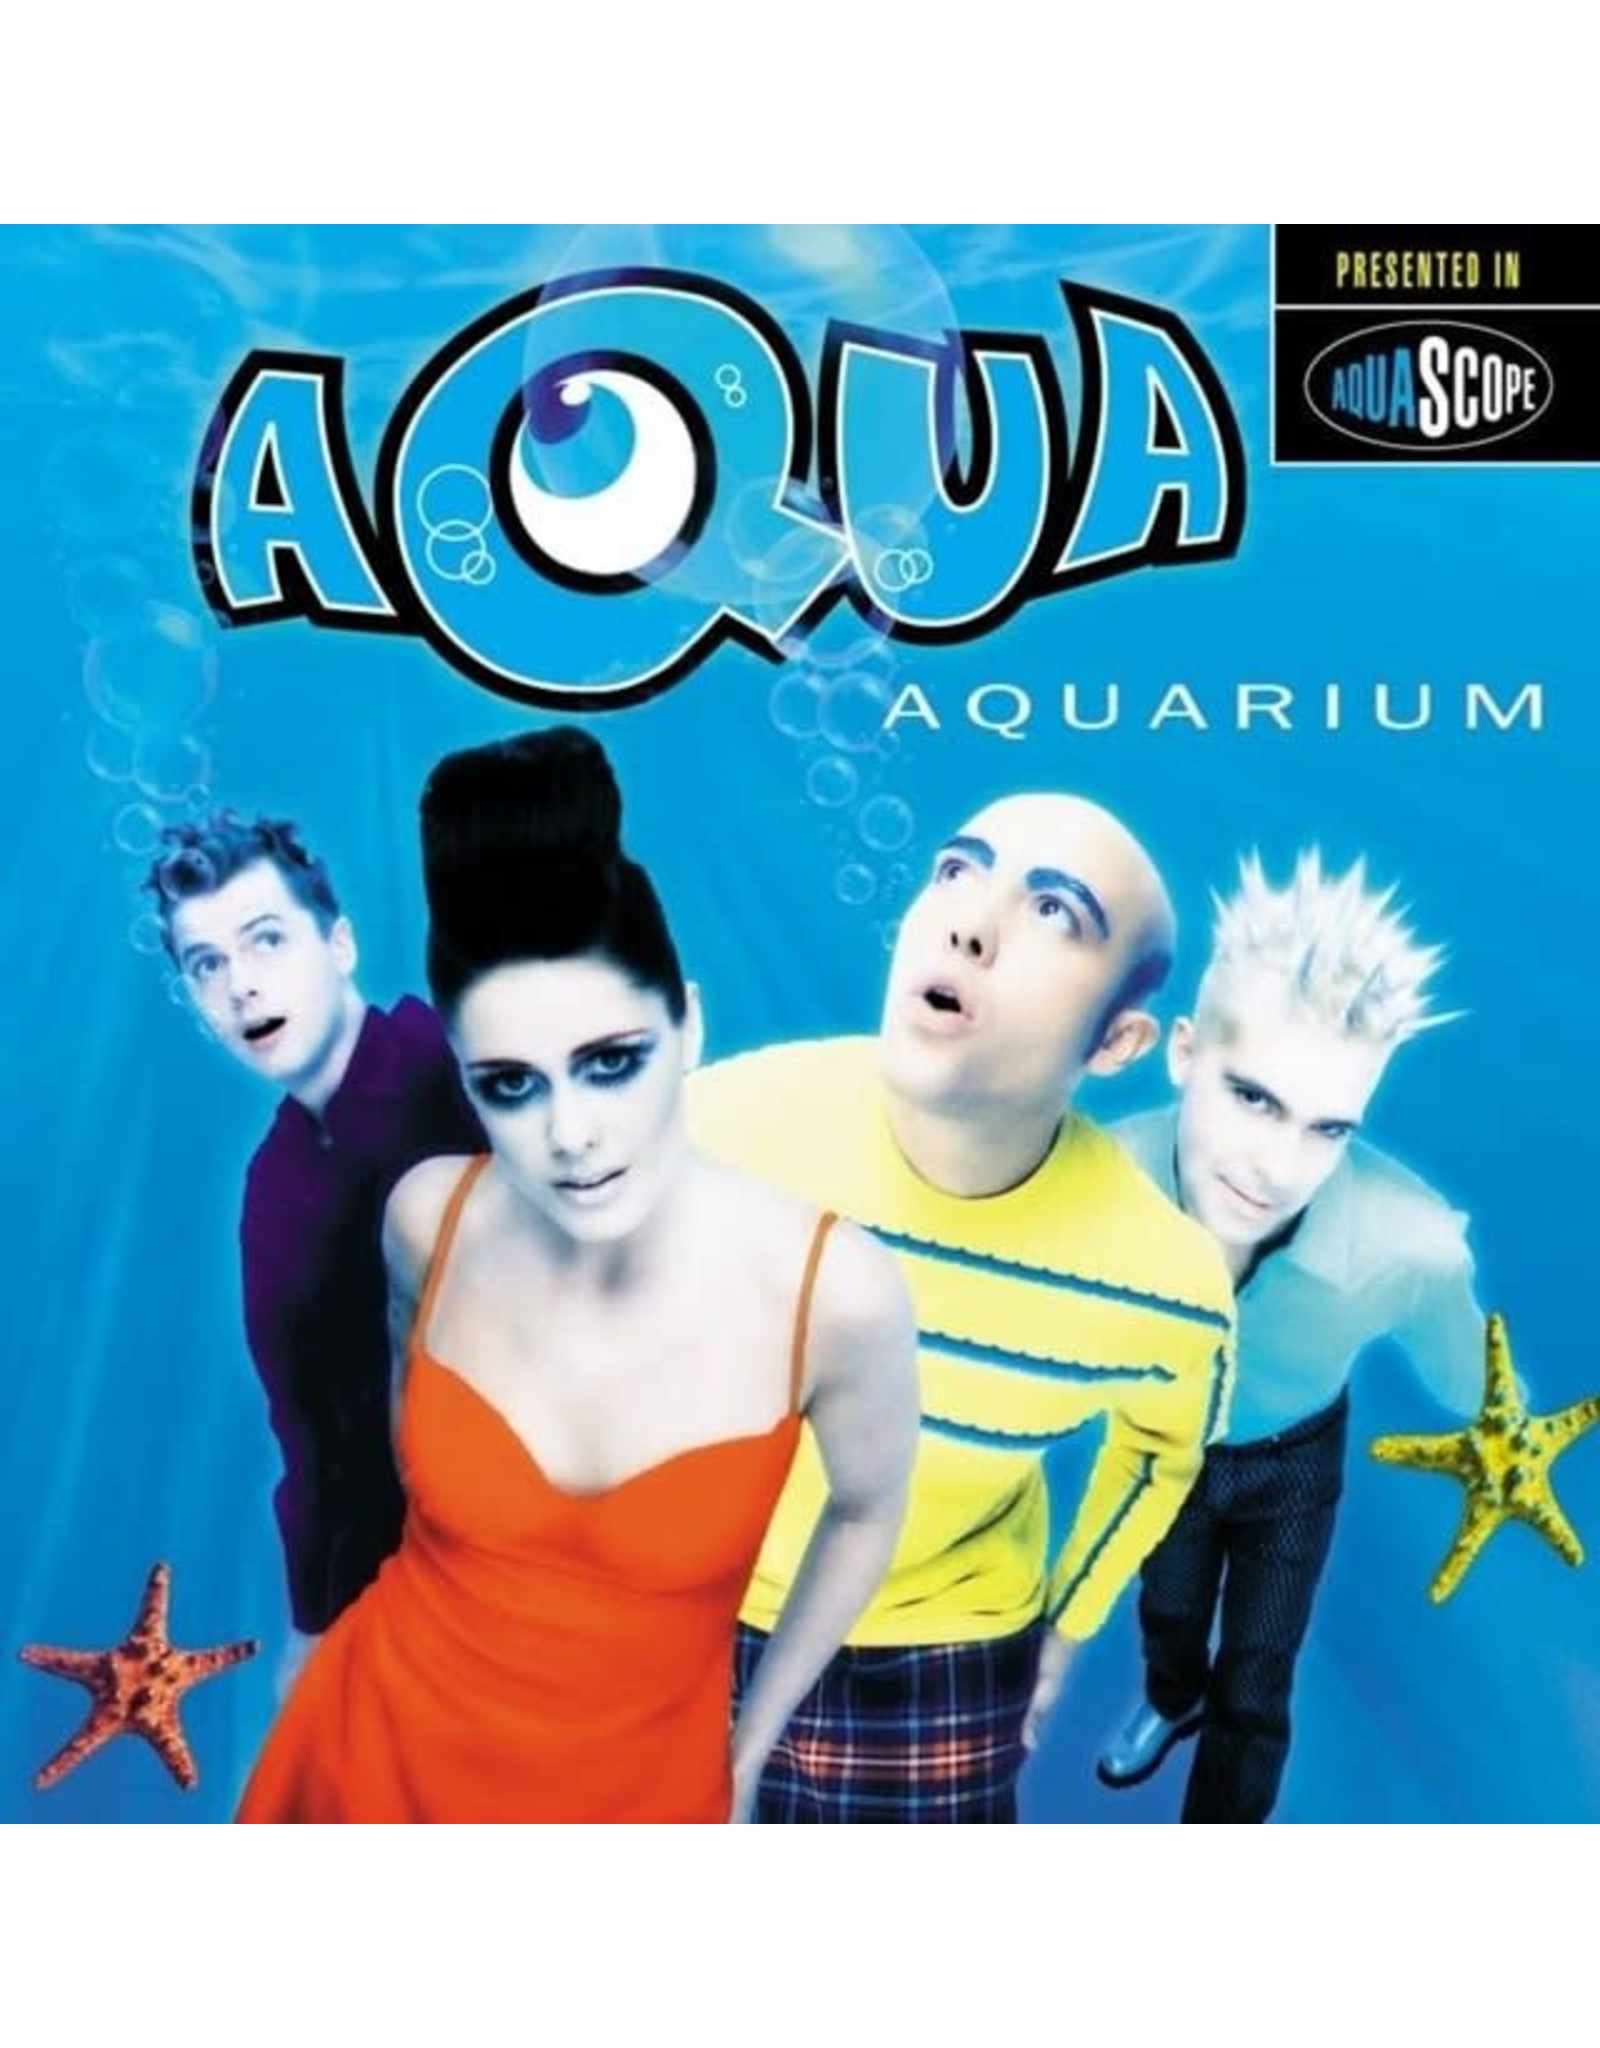 Aqua - Aquarium LP (pink/180g/ltd edition) 25th Anniversary